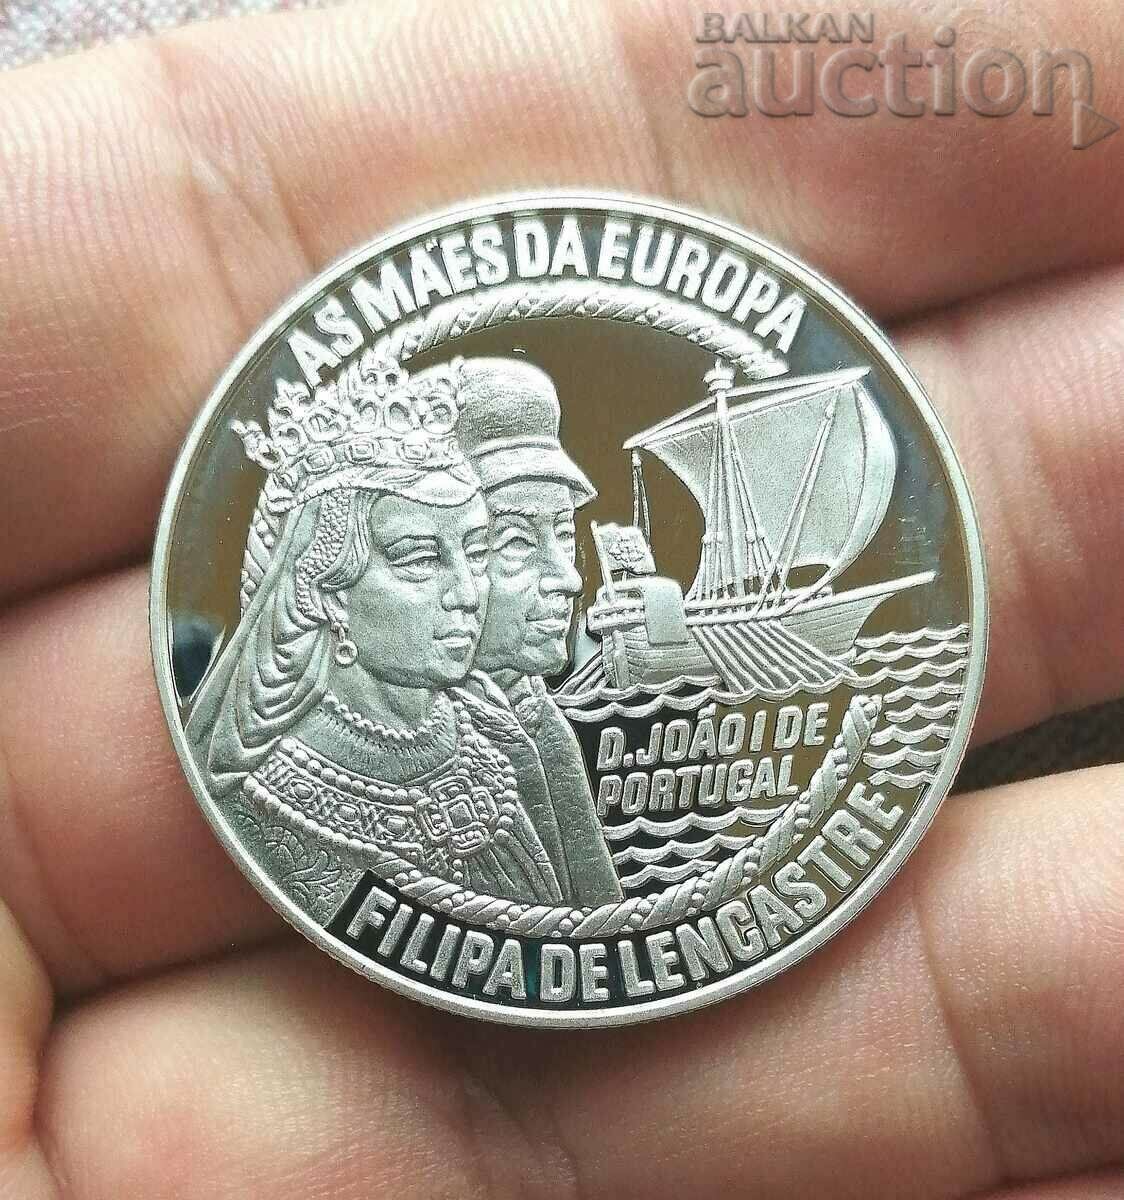 Πορτογαλία 50 €, 1996 Ως Maes'da Europa.